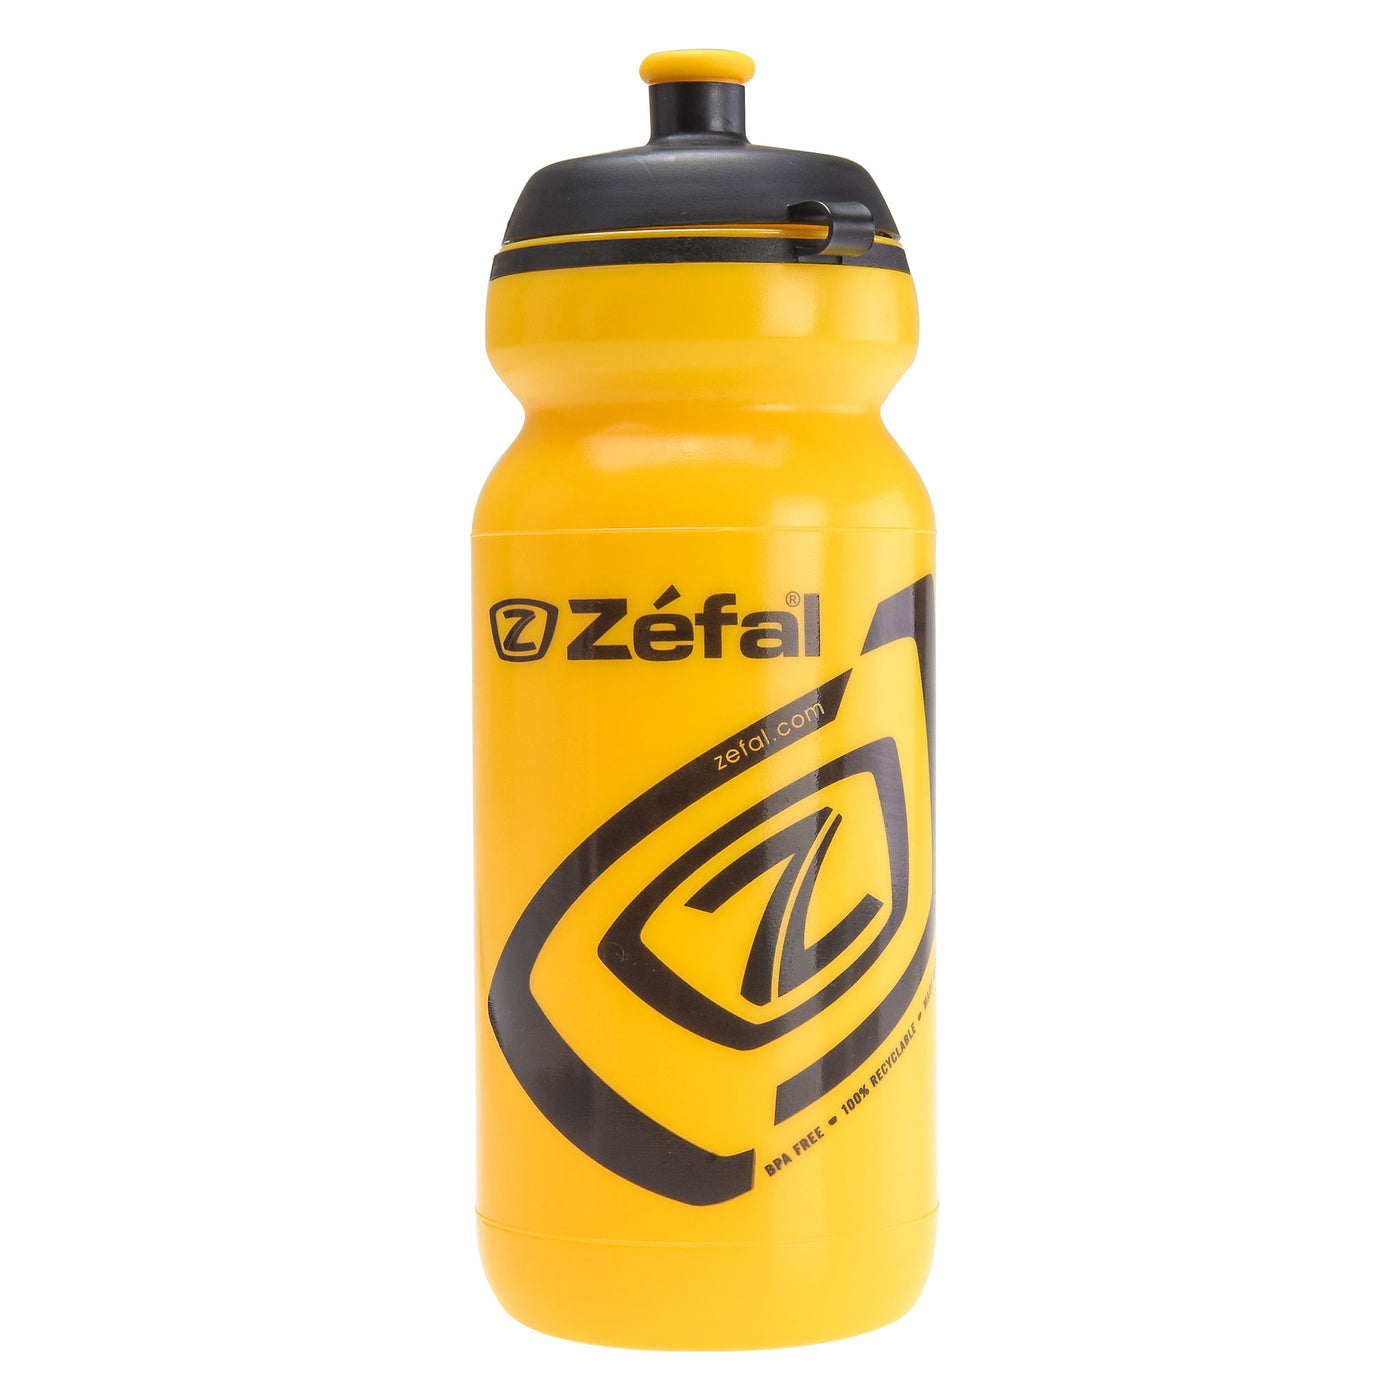 Zefal Premier 60 Bottle 600ml-Yellow - Cyclop.in